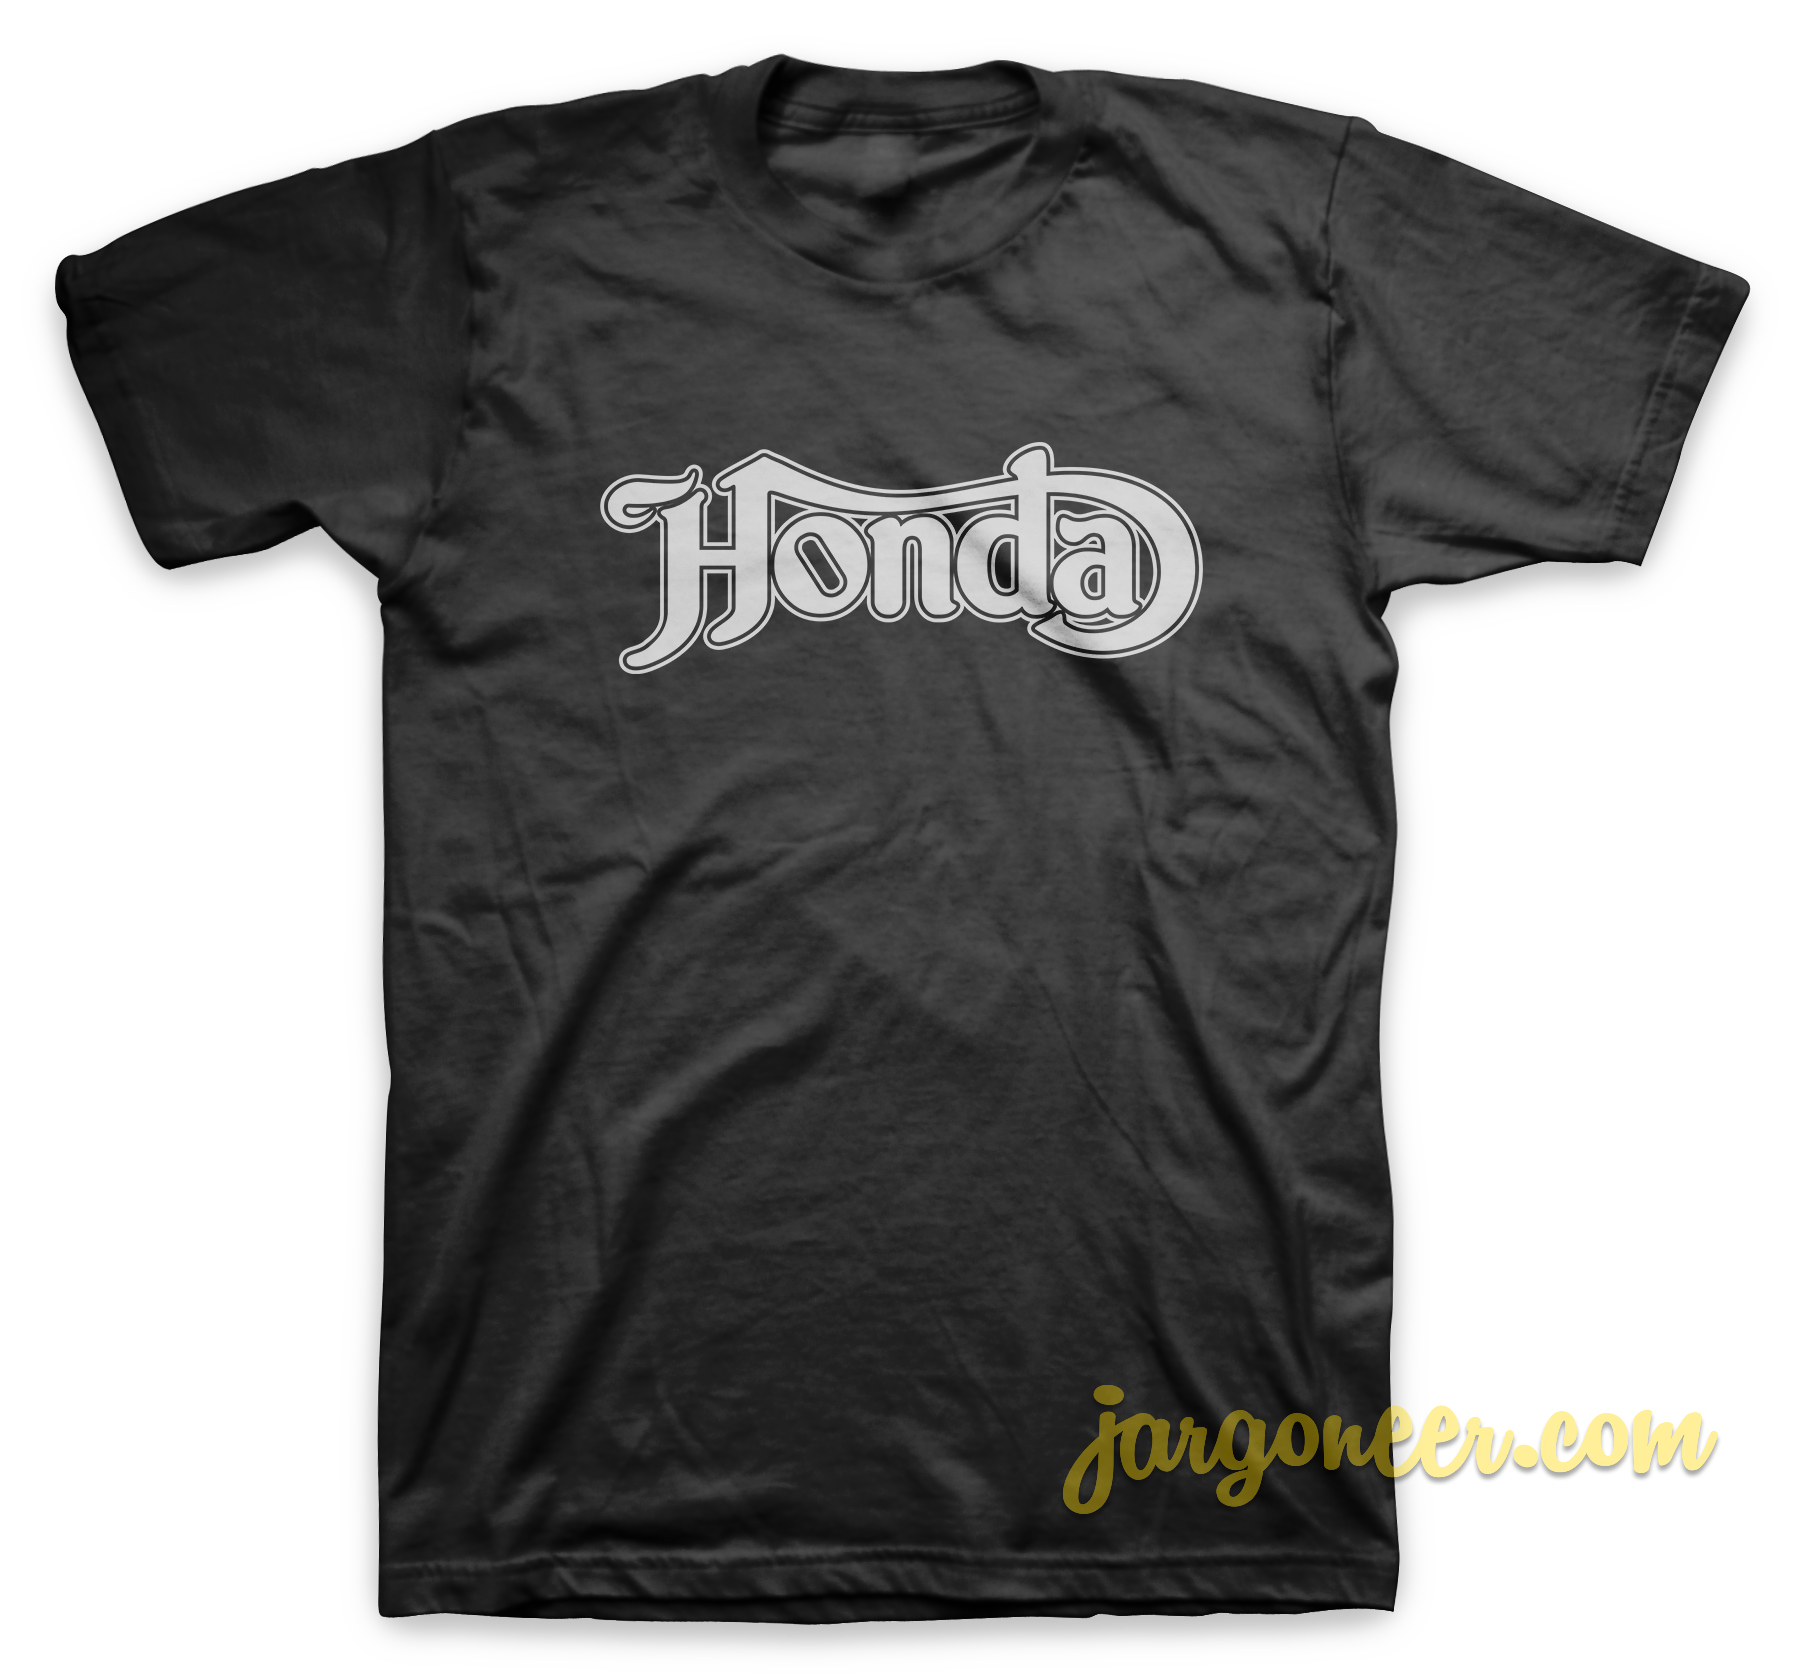 Honton Black T Shirt - Shop Unique Graphic Cool Shirt Designs